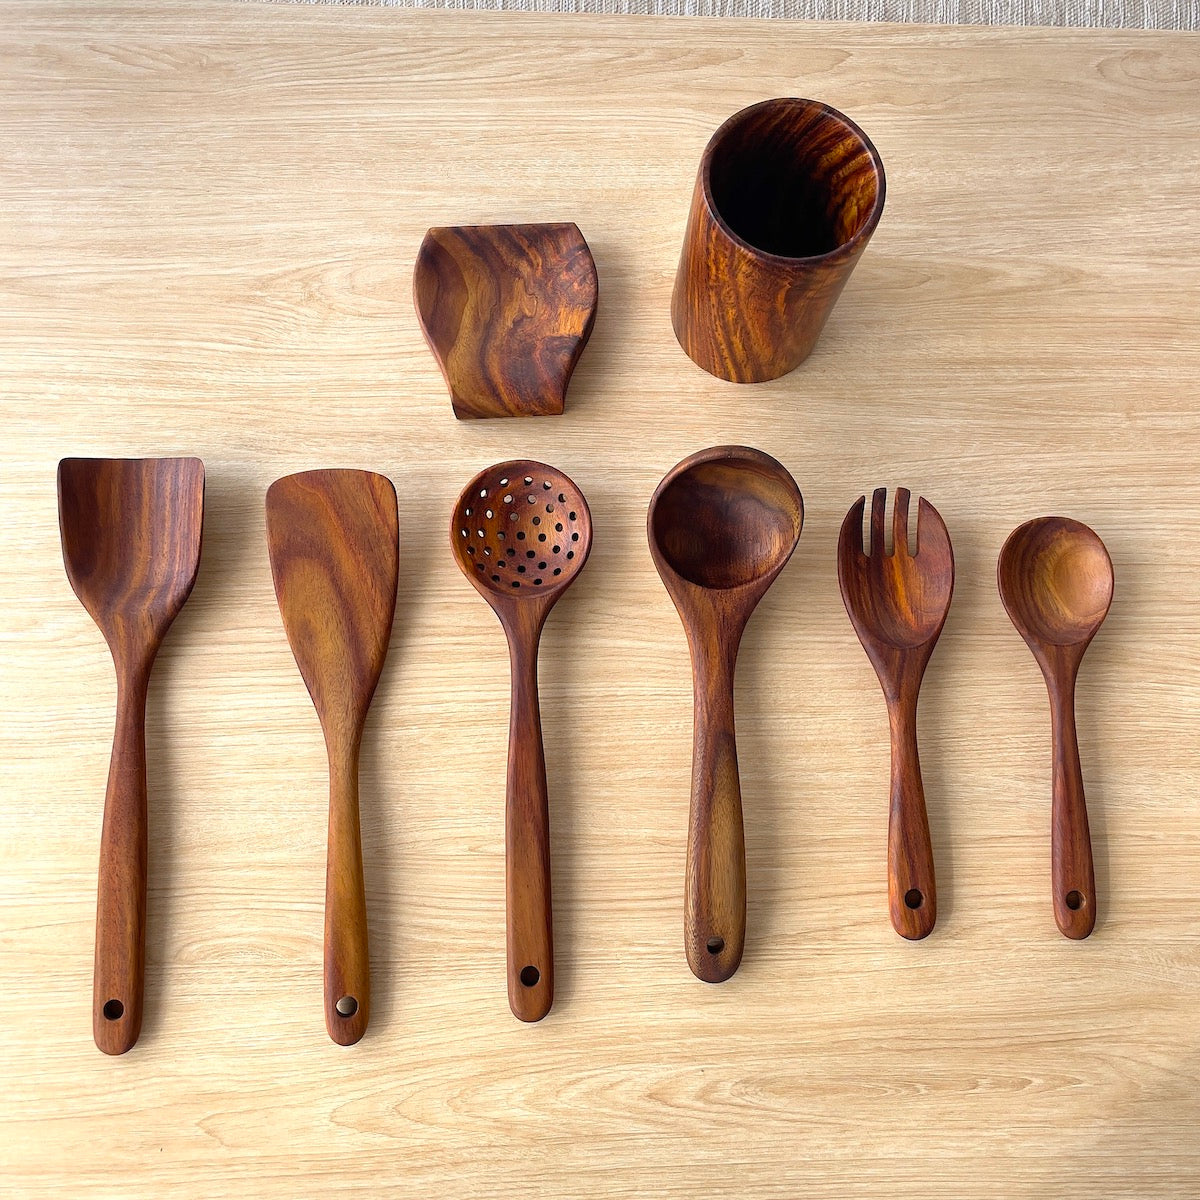 Wooden Cooking Utensils, Kitchen Utensils Set with Holder & Spoon Rest 8 Pieces